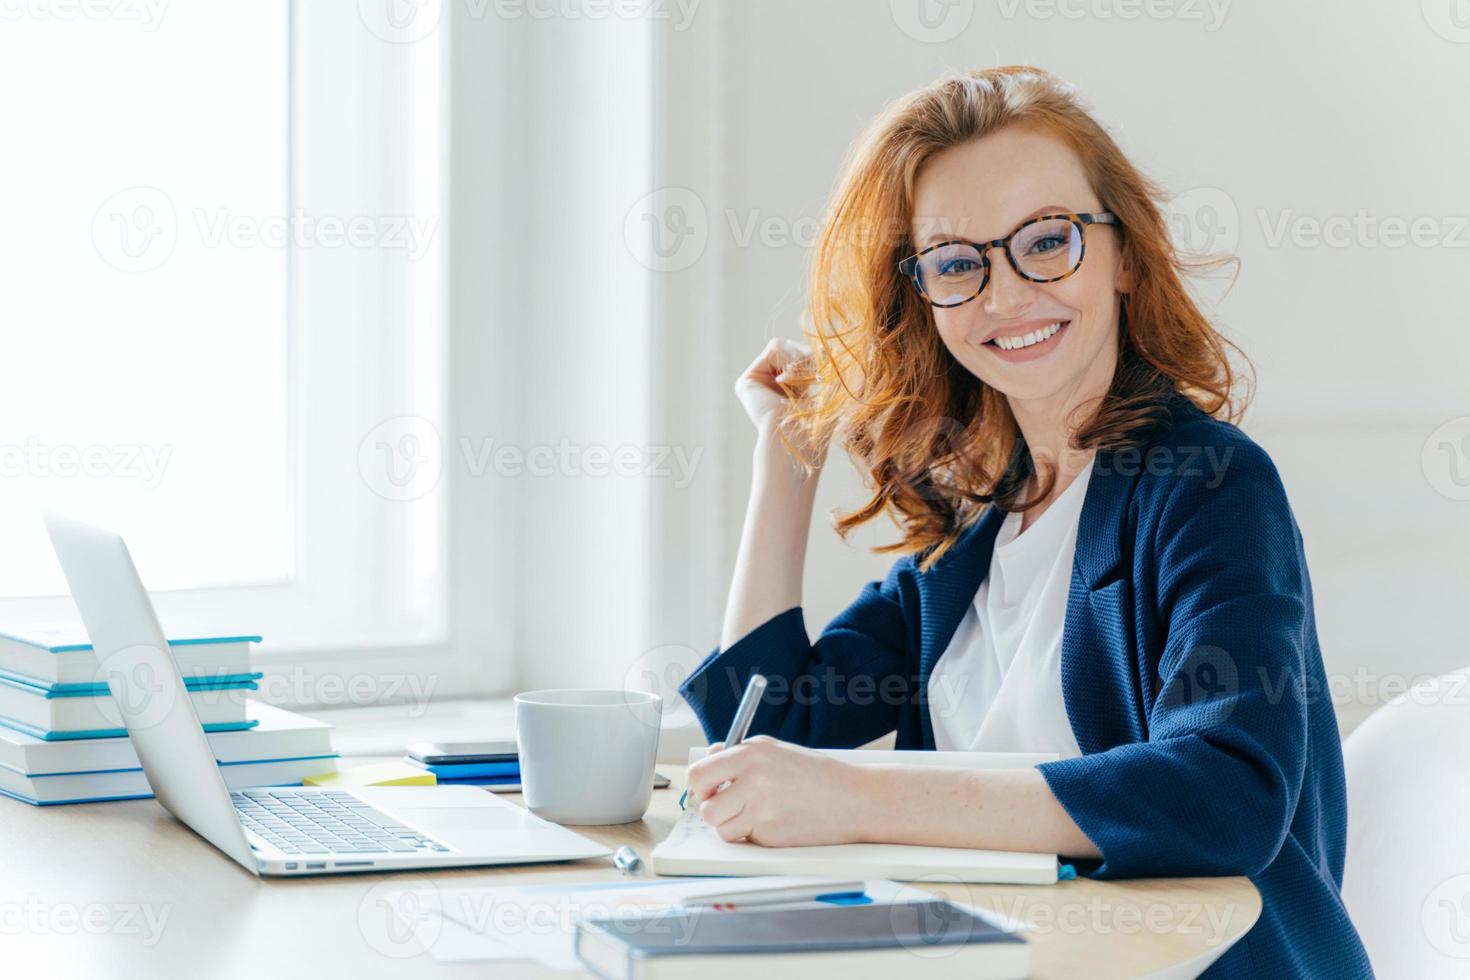 photo de côté d'une femme d'affaires prospère aux cheveux roux, sourit positivement, enregistre des informations dans le bloc-notes, boit du café, recherche des informations sur un ordinateur portable, développe un projet de démarrage